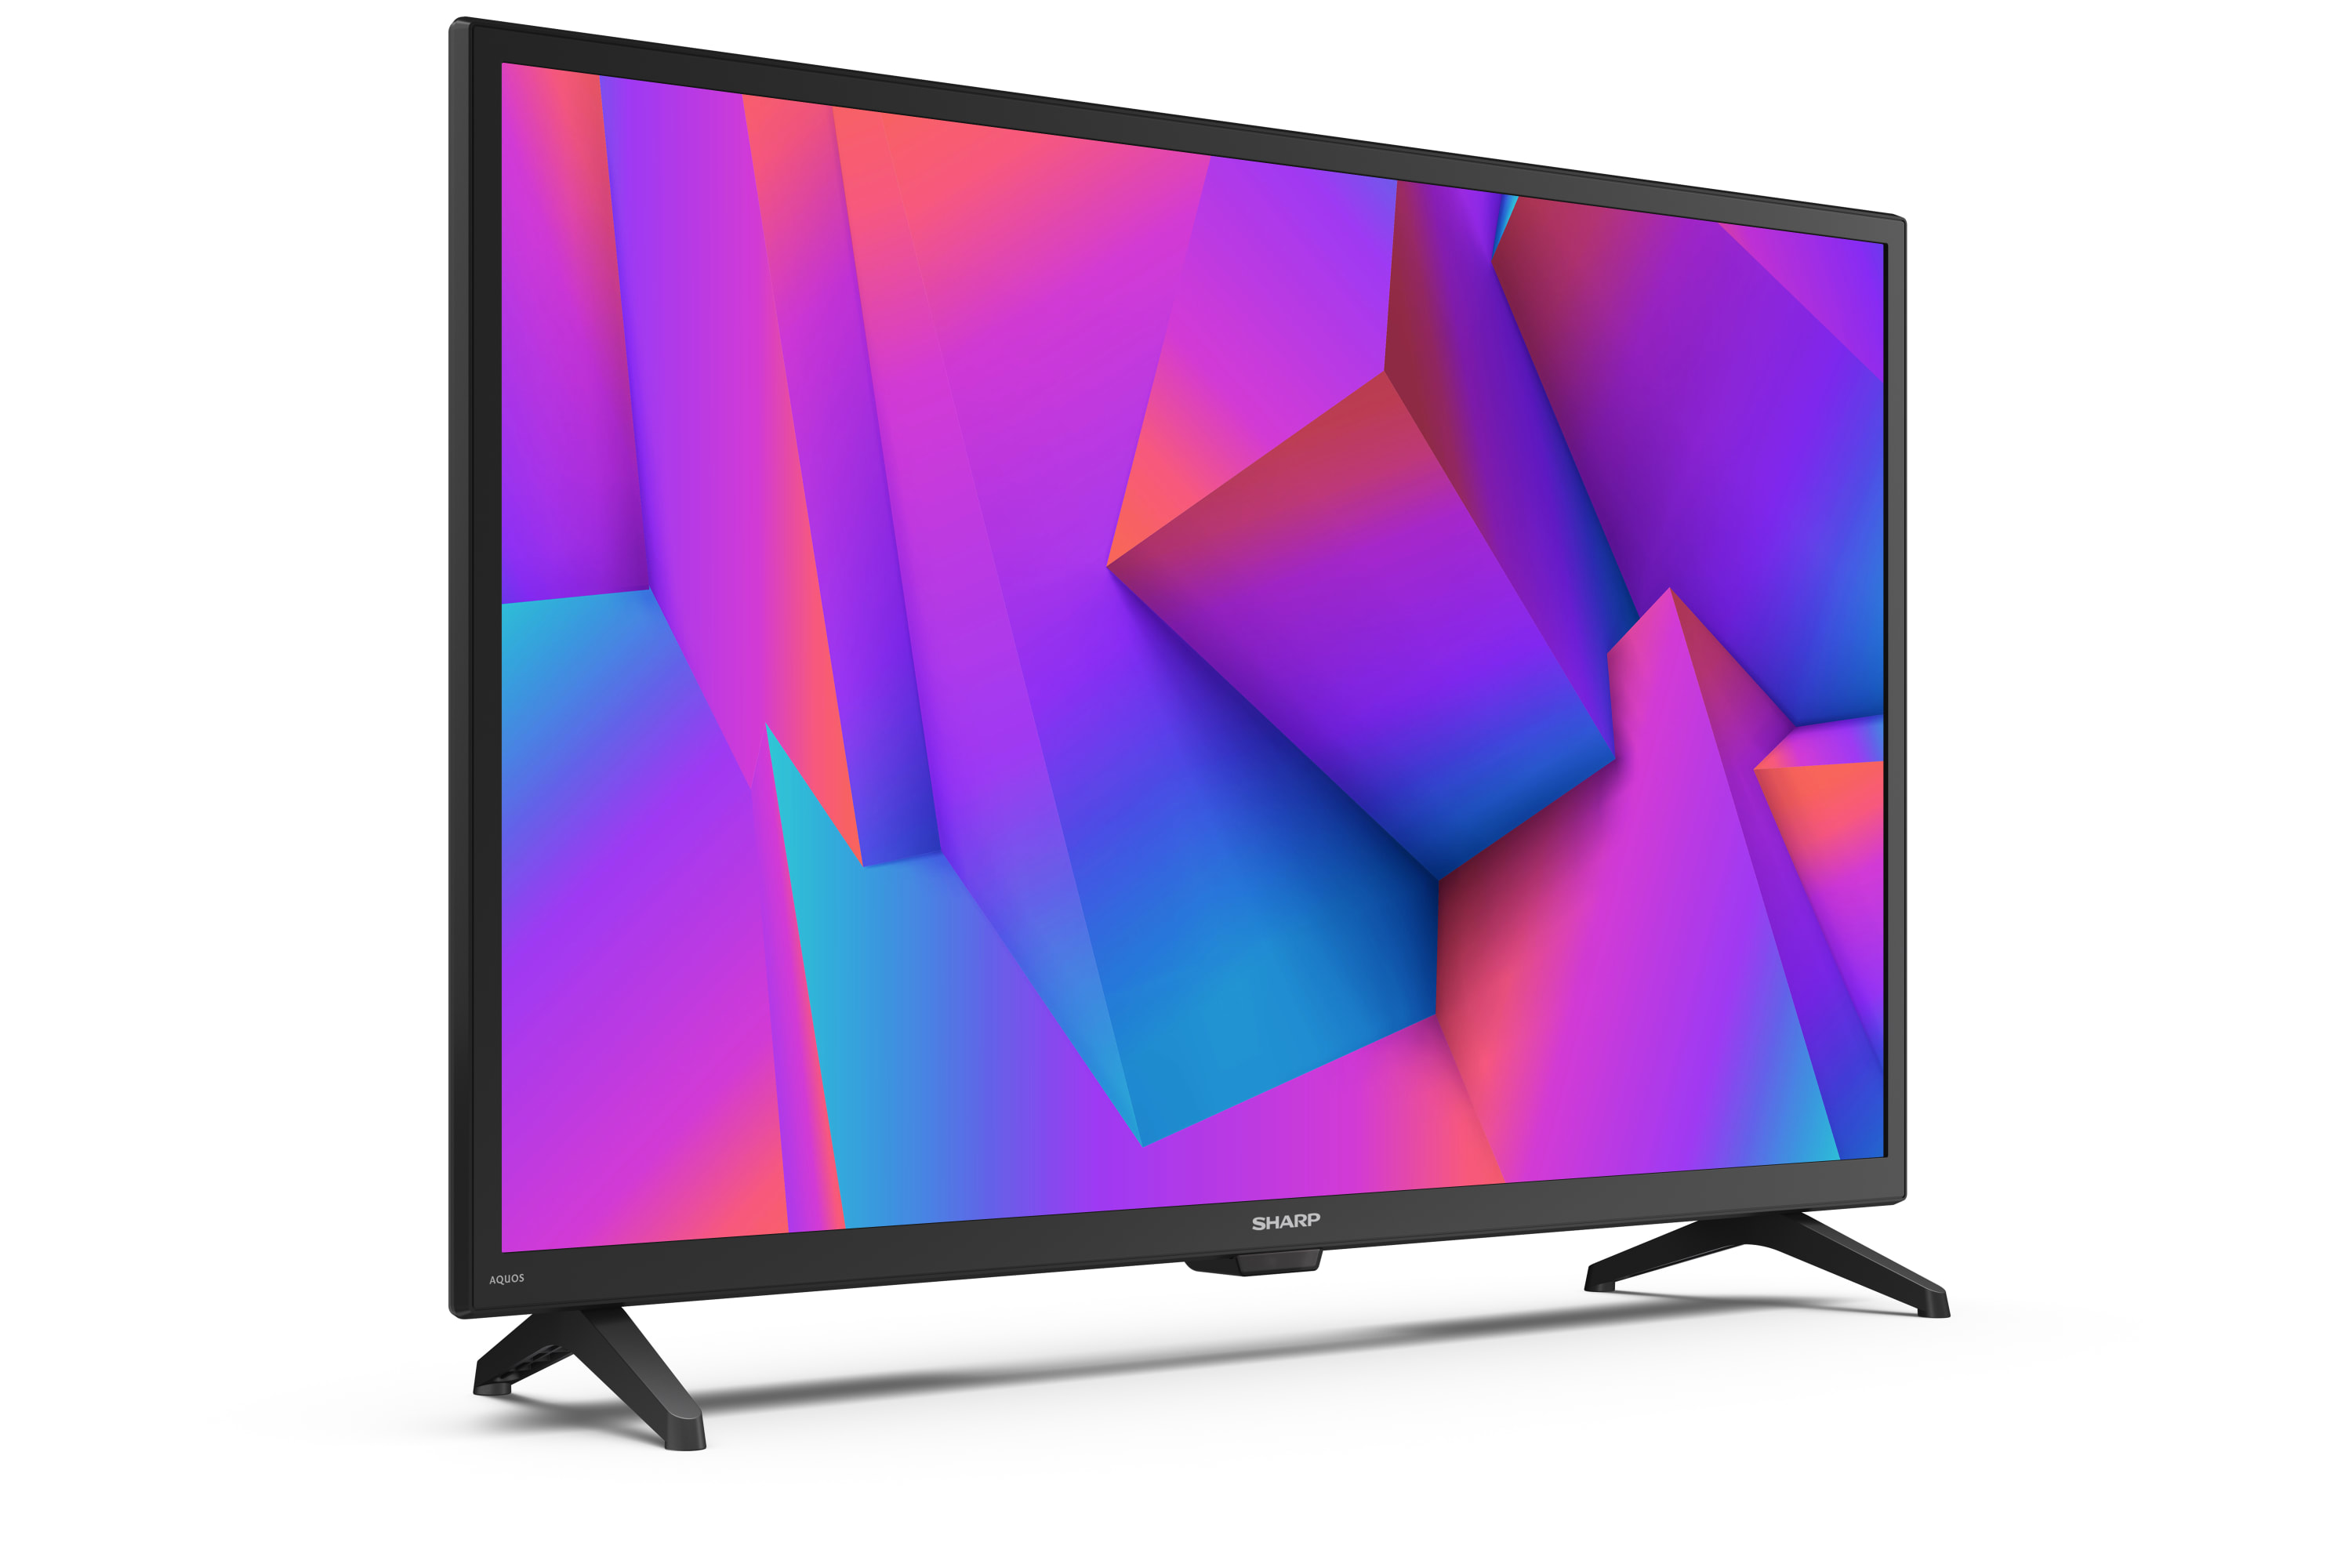 Smart TV HD/Full HD - 32" HD READY SMART TV